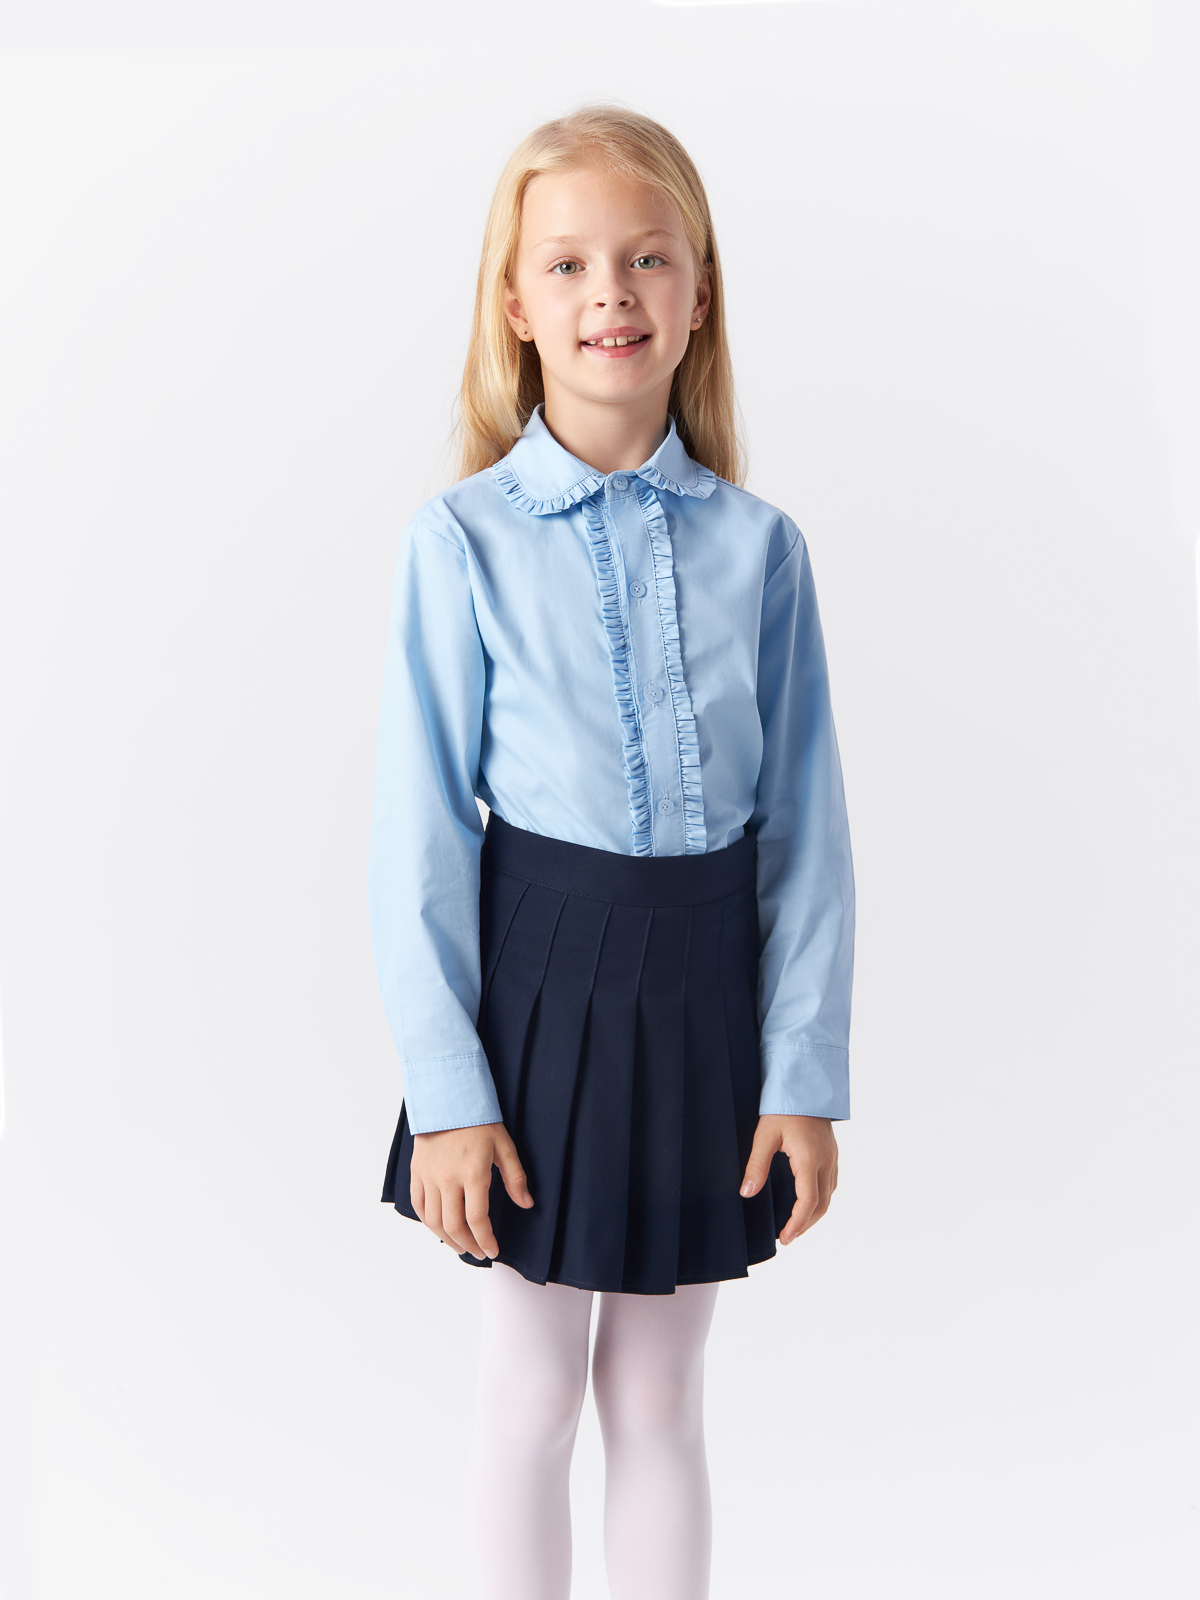 Блузка Yiwu Xflot Supply Chain детская, BS-2blue, размер 150 см блузка классическая с принтом сердечко белая button blue 140